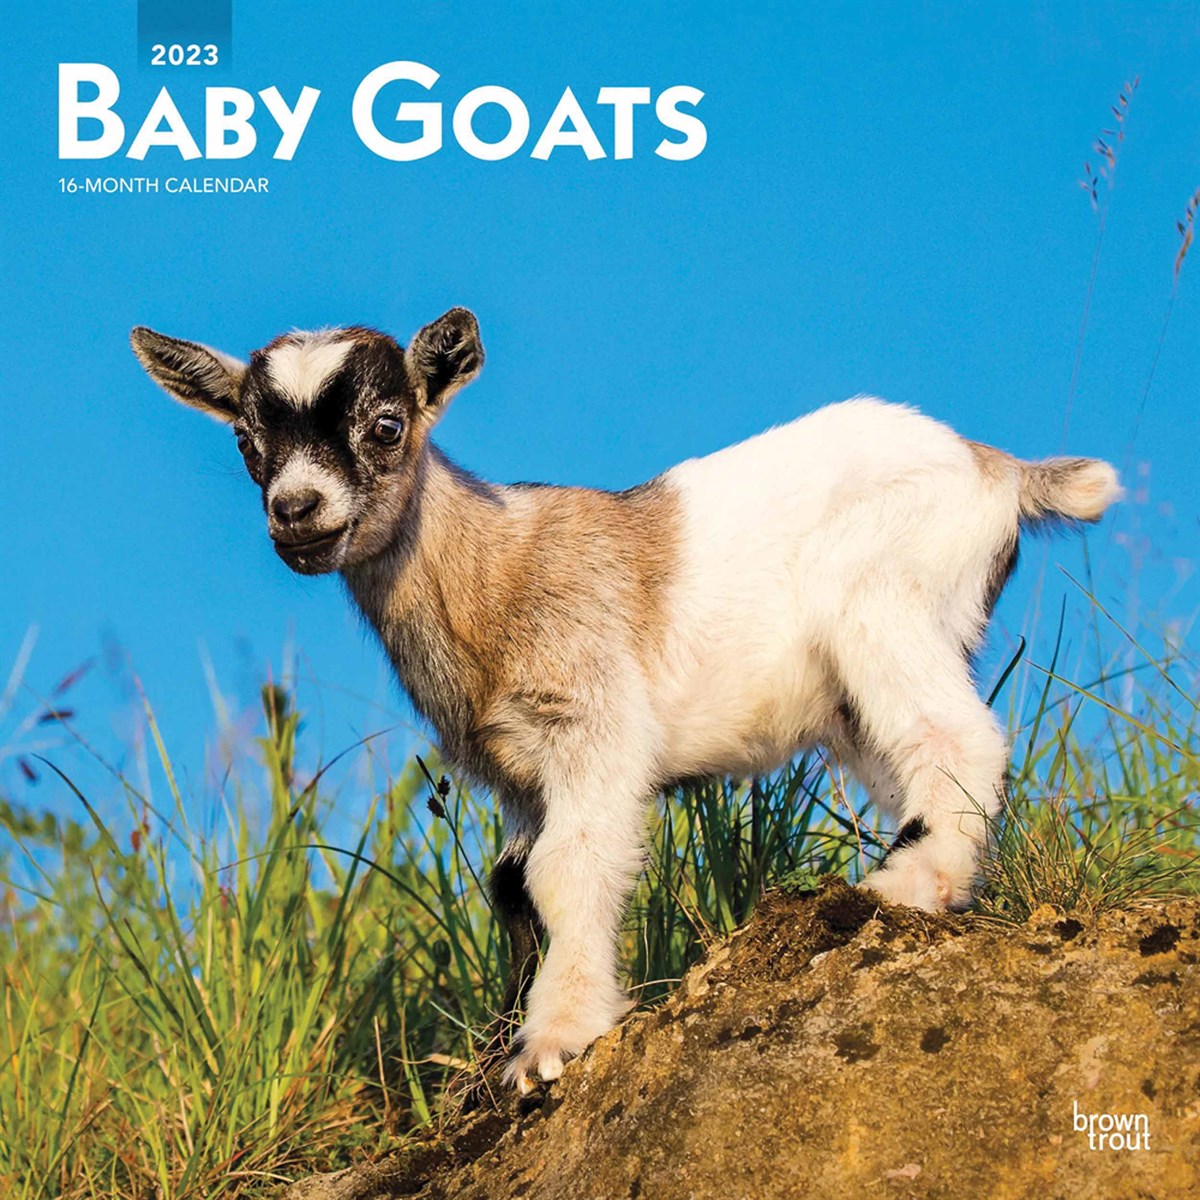 Baby Goats 2023 Calendars